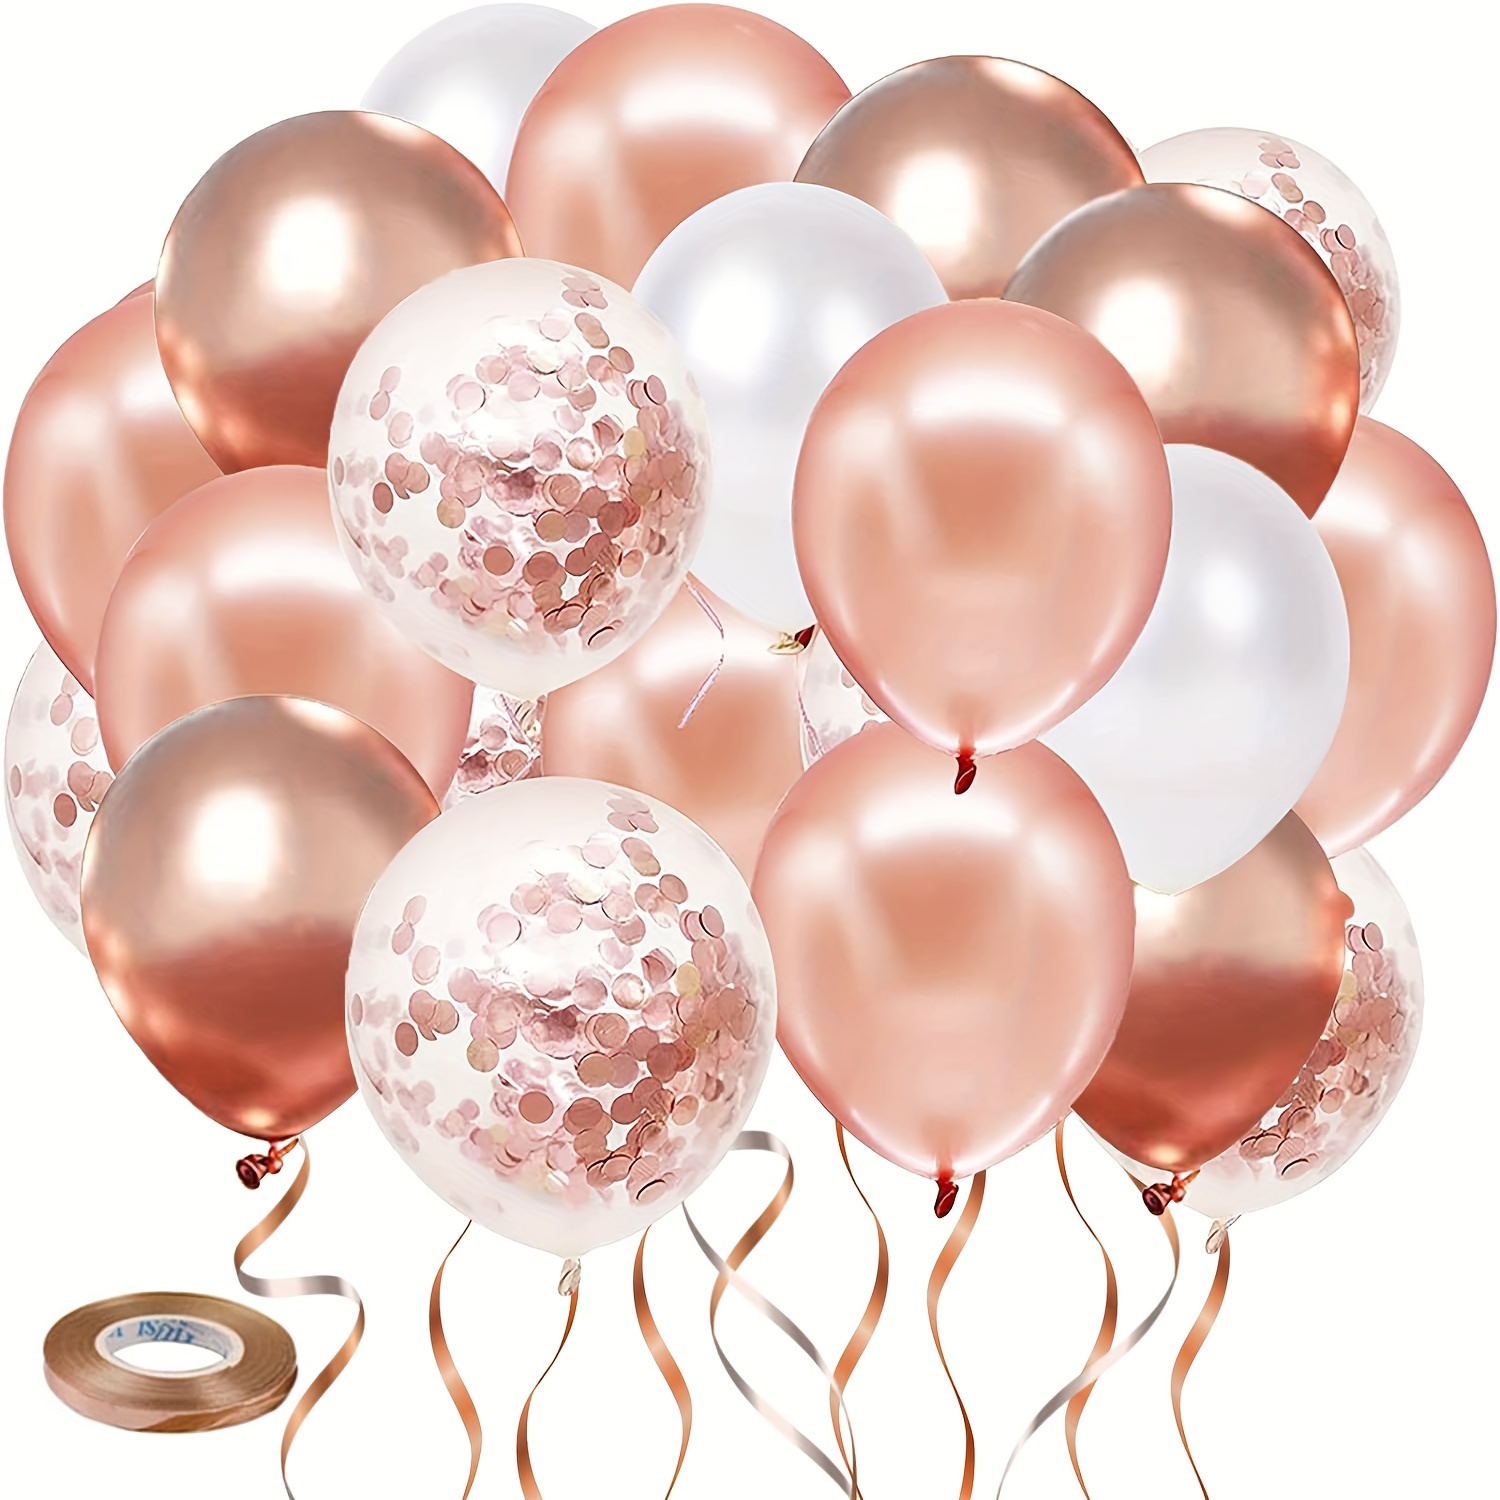 Rose Golden Confetti Balloons, 50 Pezzi Di Palloncini Bianchi E Rose  Golden, Adatti Per Decorare Feste Di Compleanno, Matrimoni, Fidanzamenti,  Addii